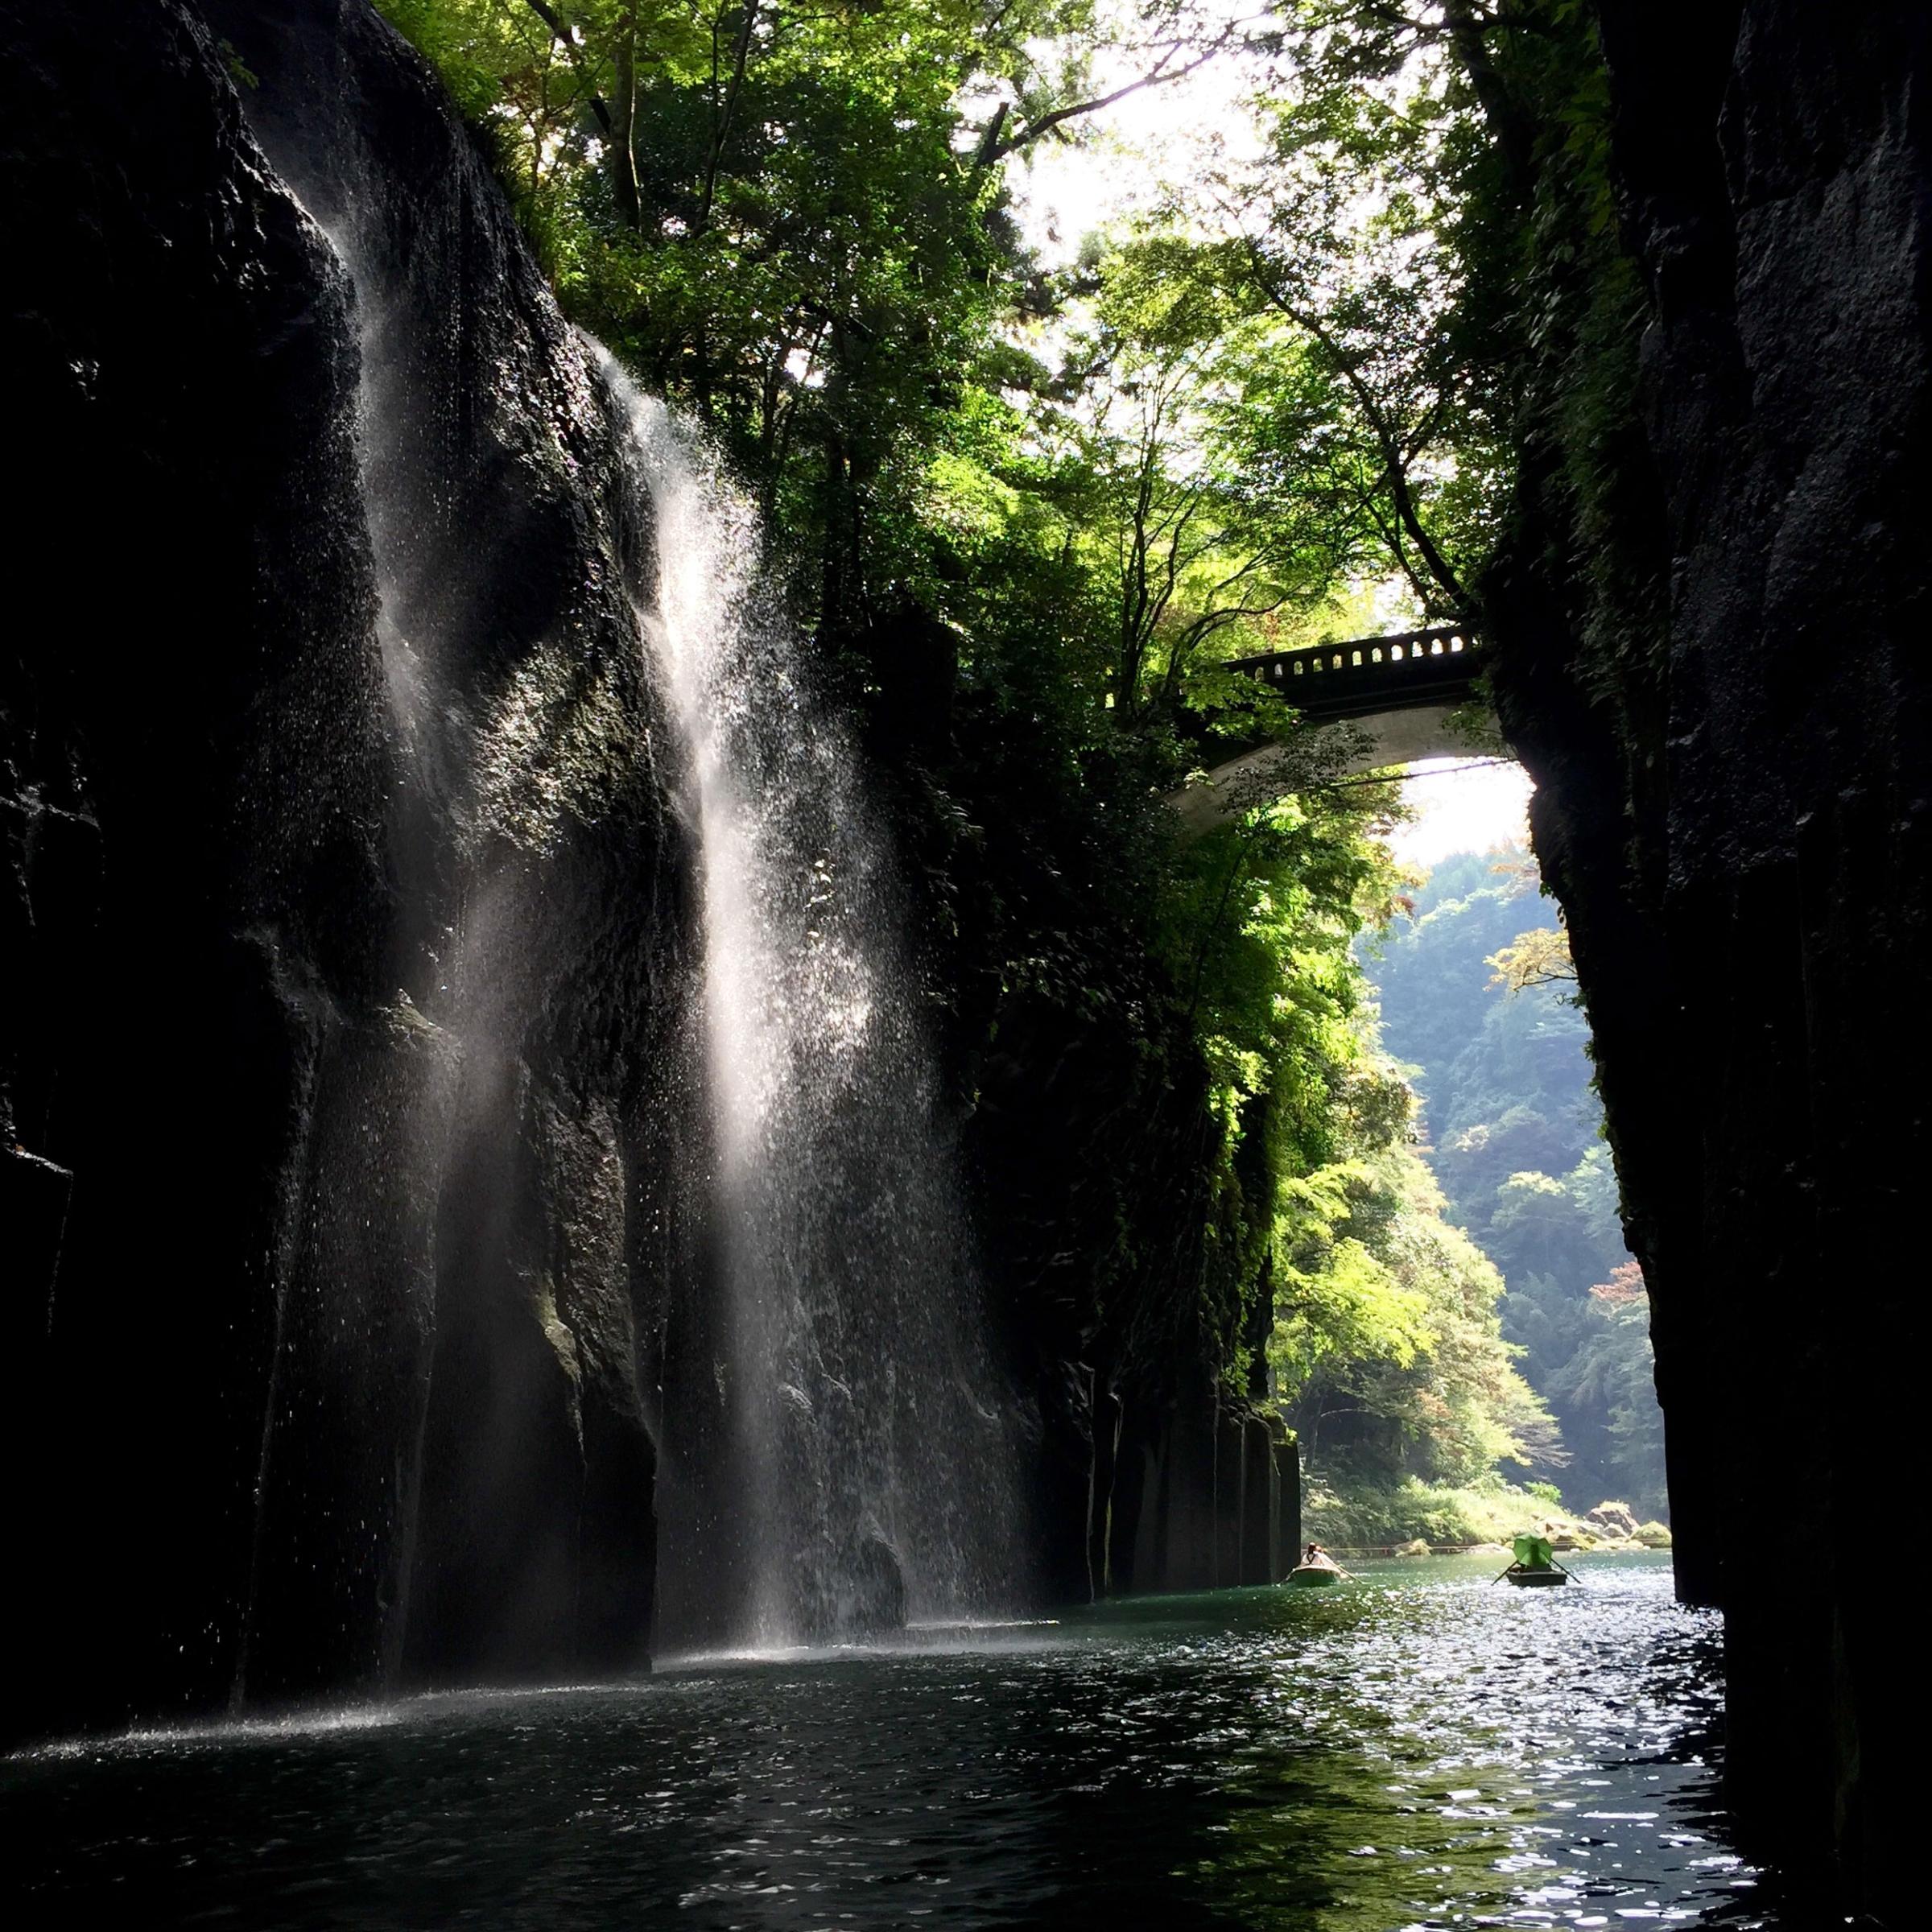 Takachiho Gorge, Kyushi, Japan